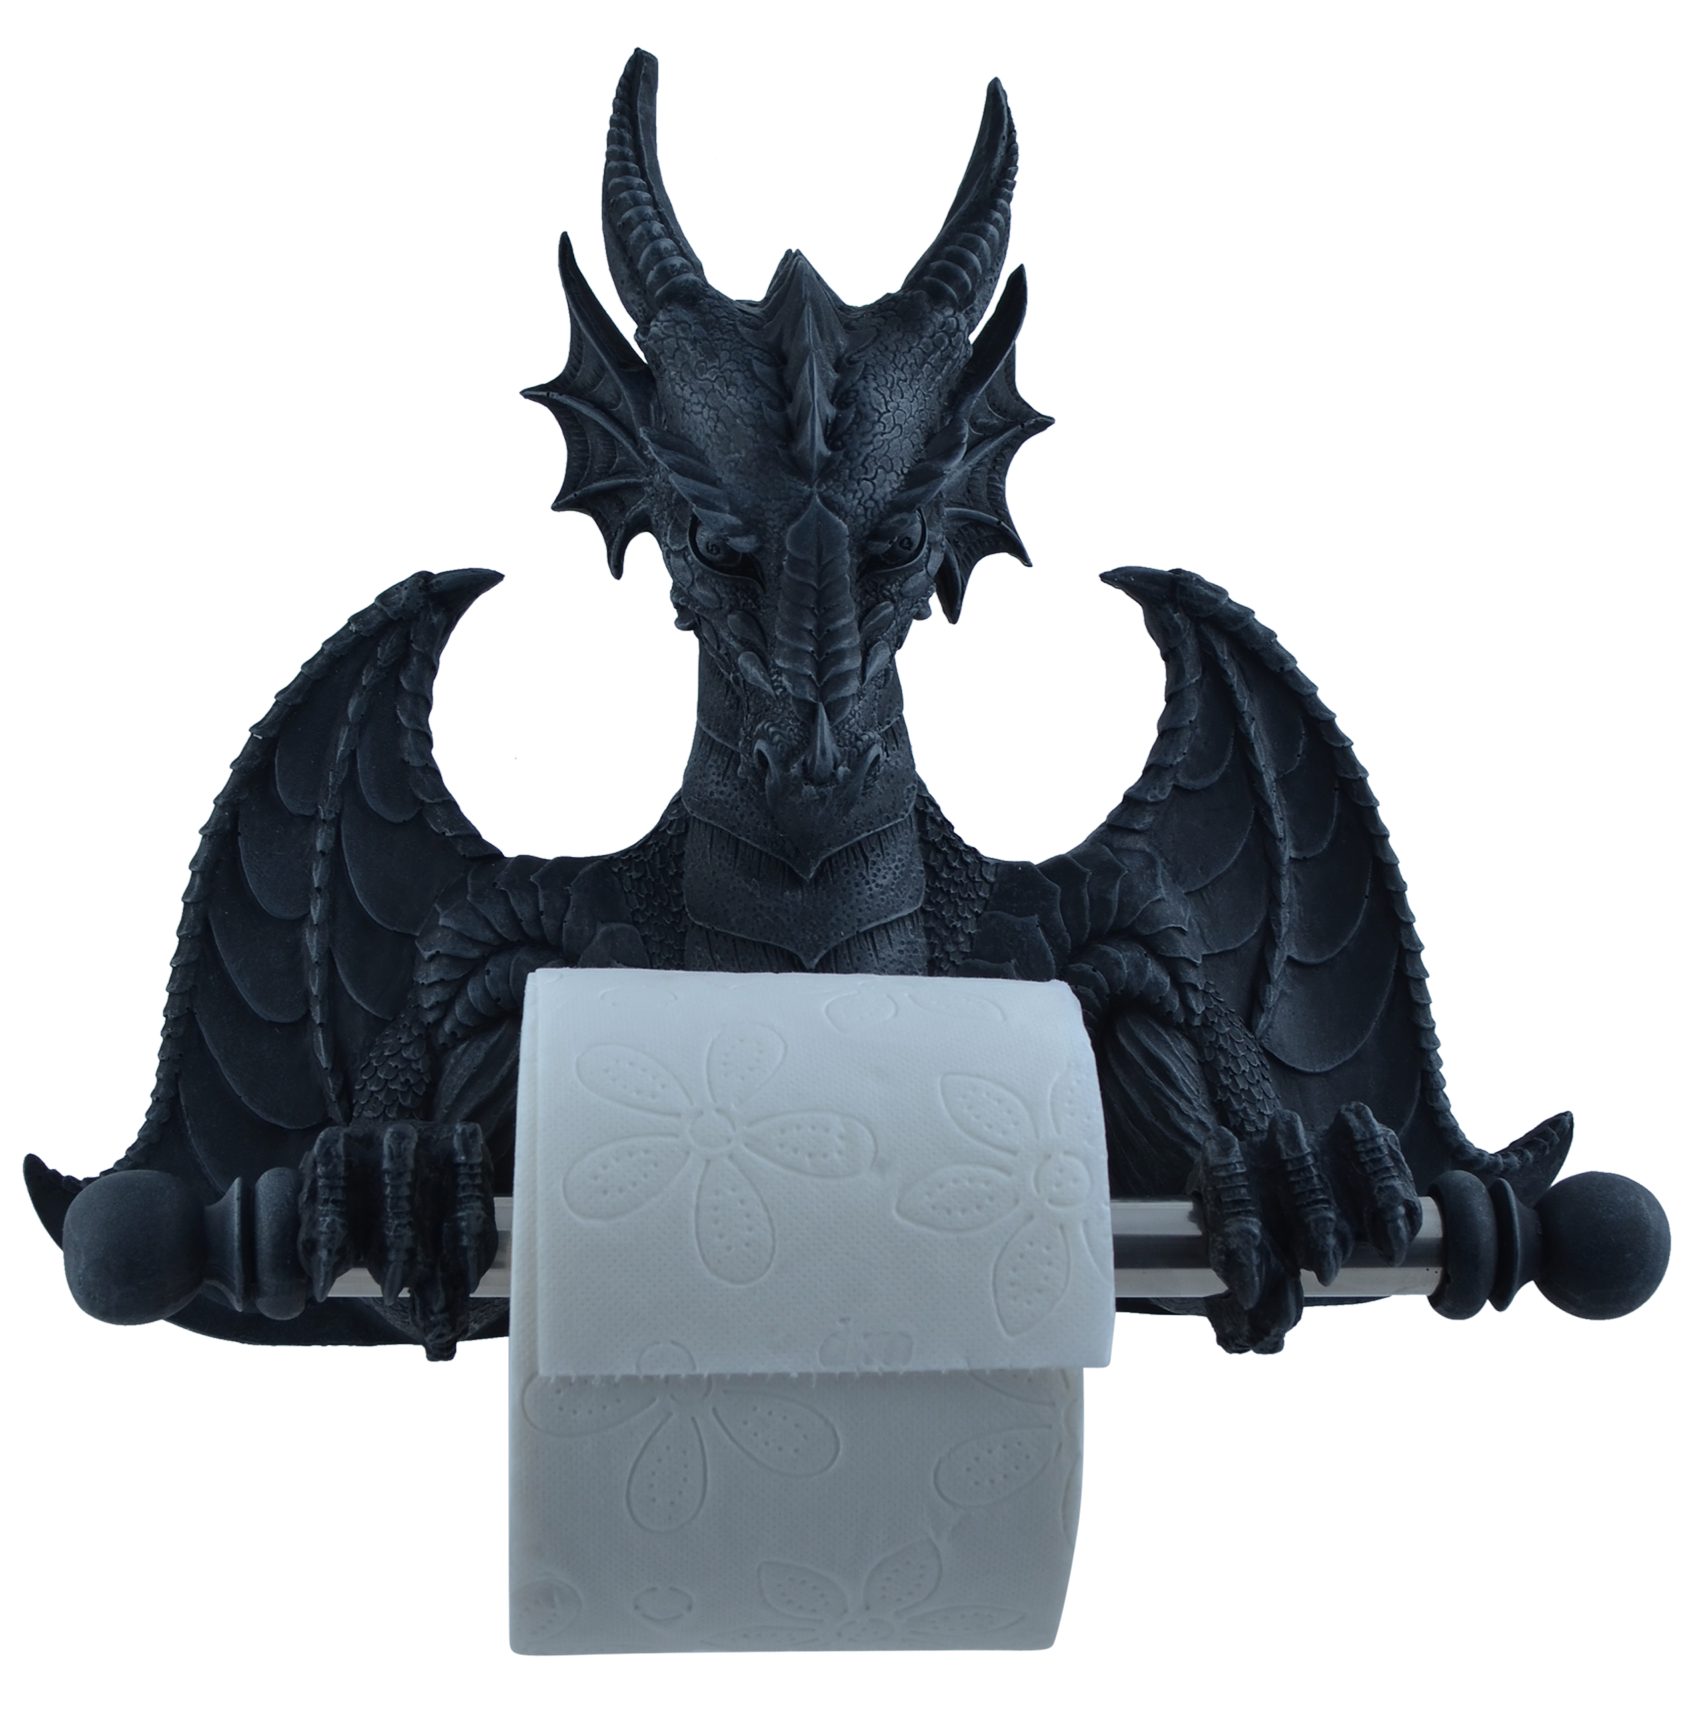 Vogler direct Gmbh Toilettenpapierhalter Toilettenrollenhalter Drache, aus Kunststein, mit Metallstange, von Hand coloriert, aus Kunststein, LxBxH ca. 32x26x11cm